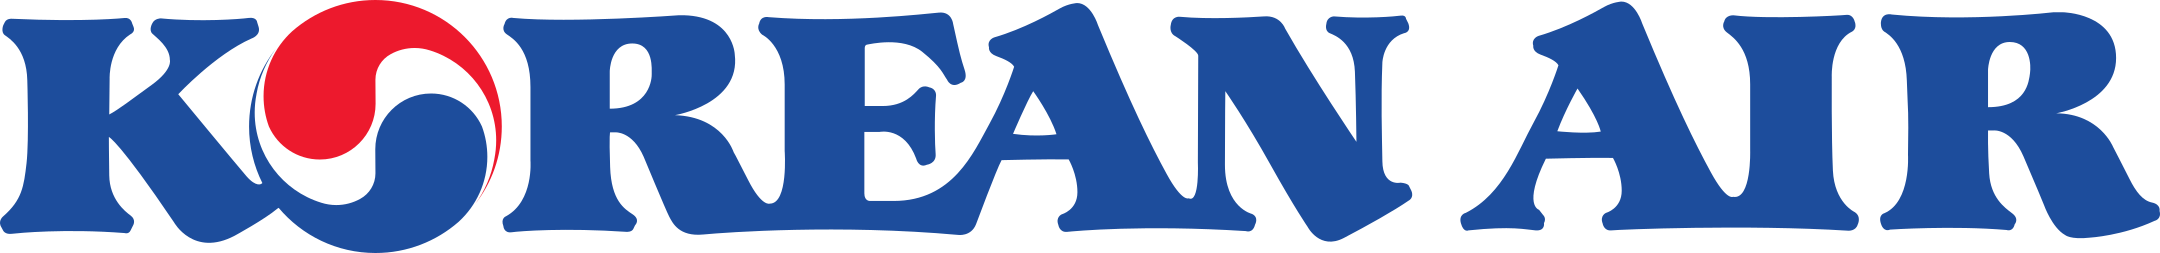 korean air 1 - Korean Air Logo